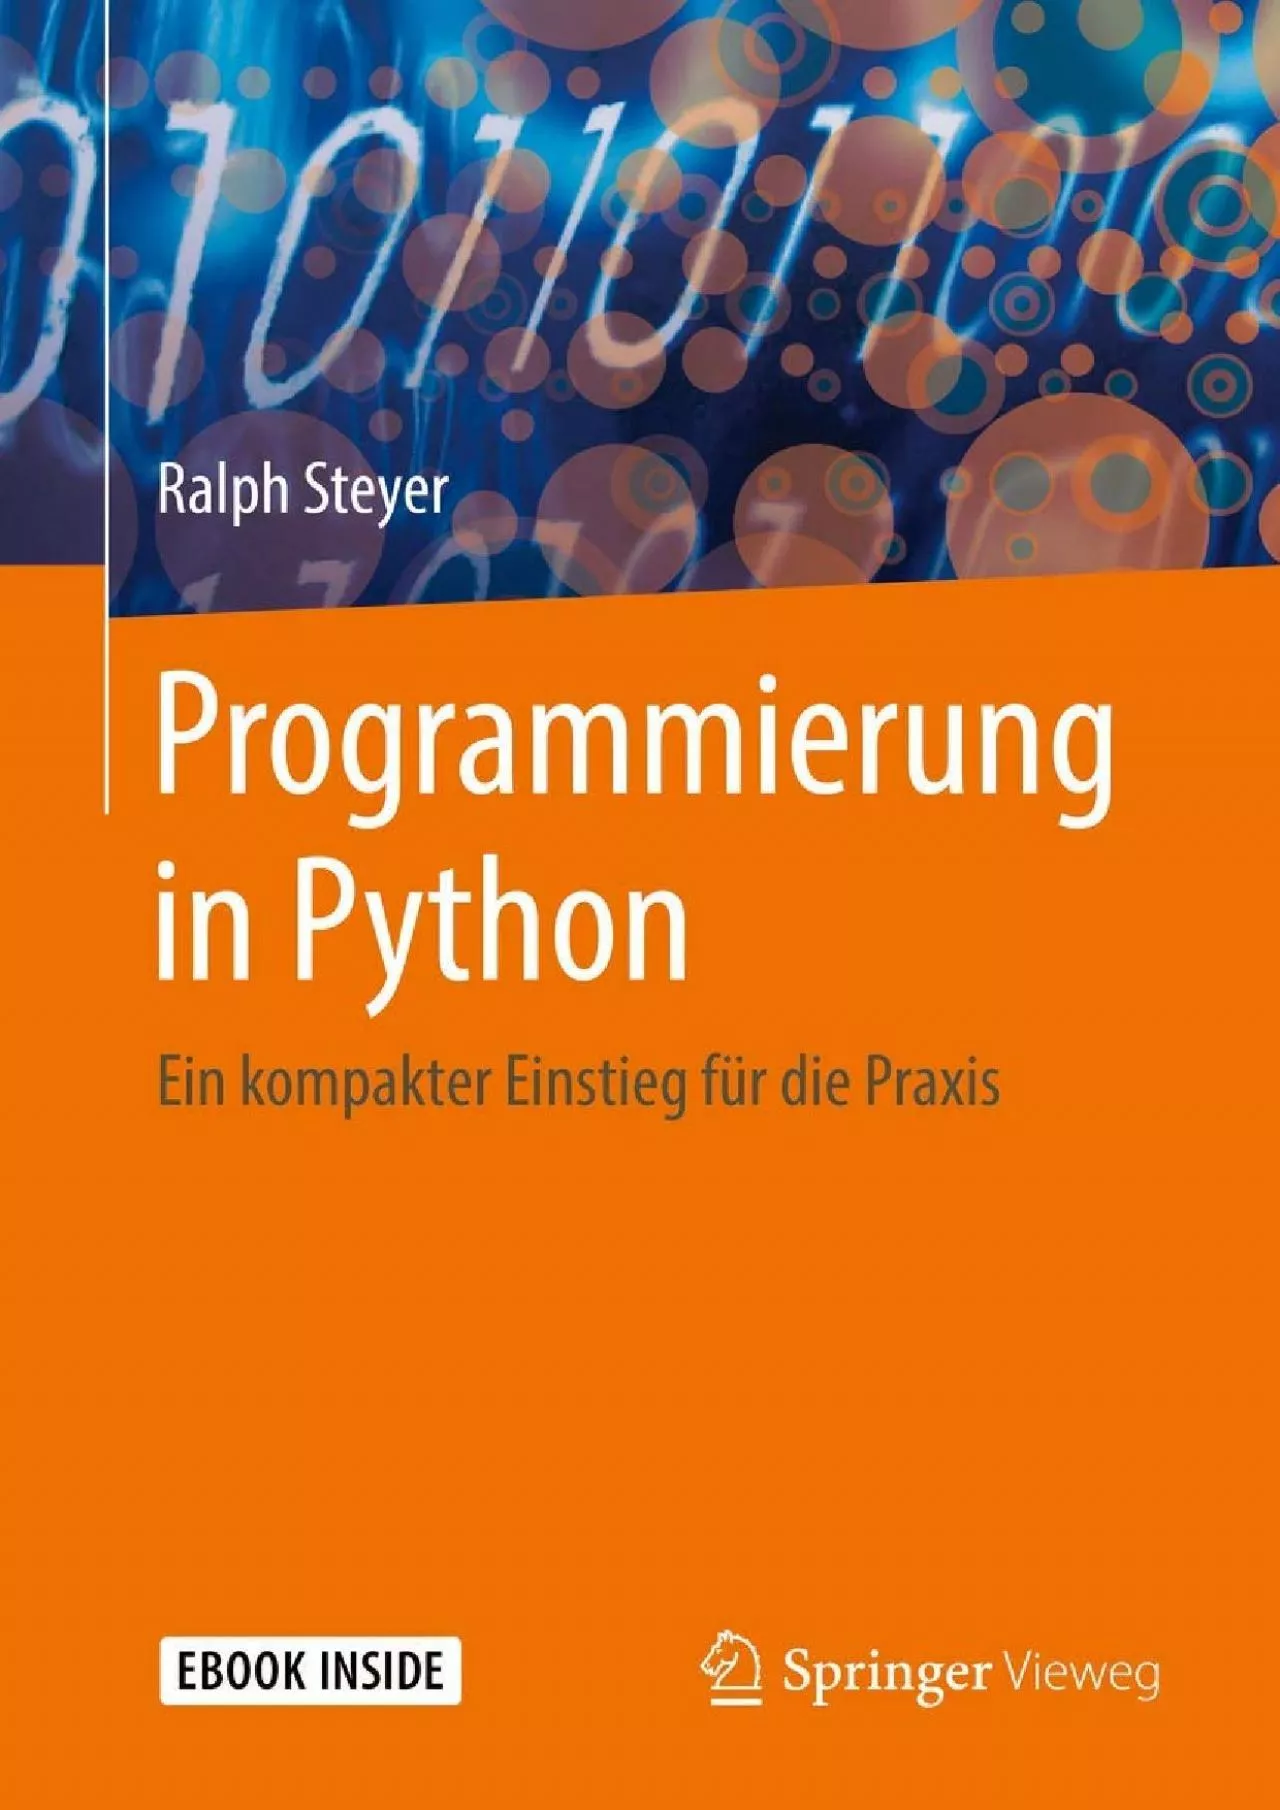 [READING BOOK]-Programmierung in Python: Ein kompakter Einstieg für die Praxis (German